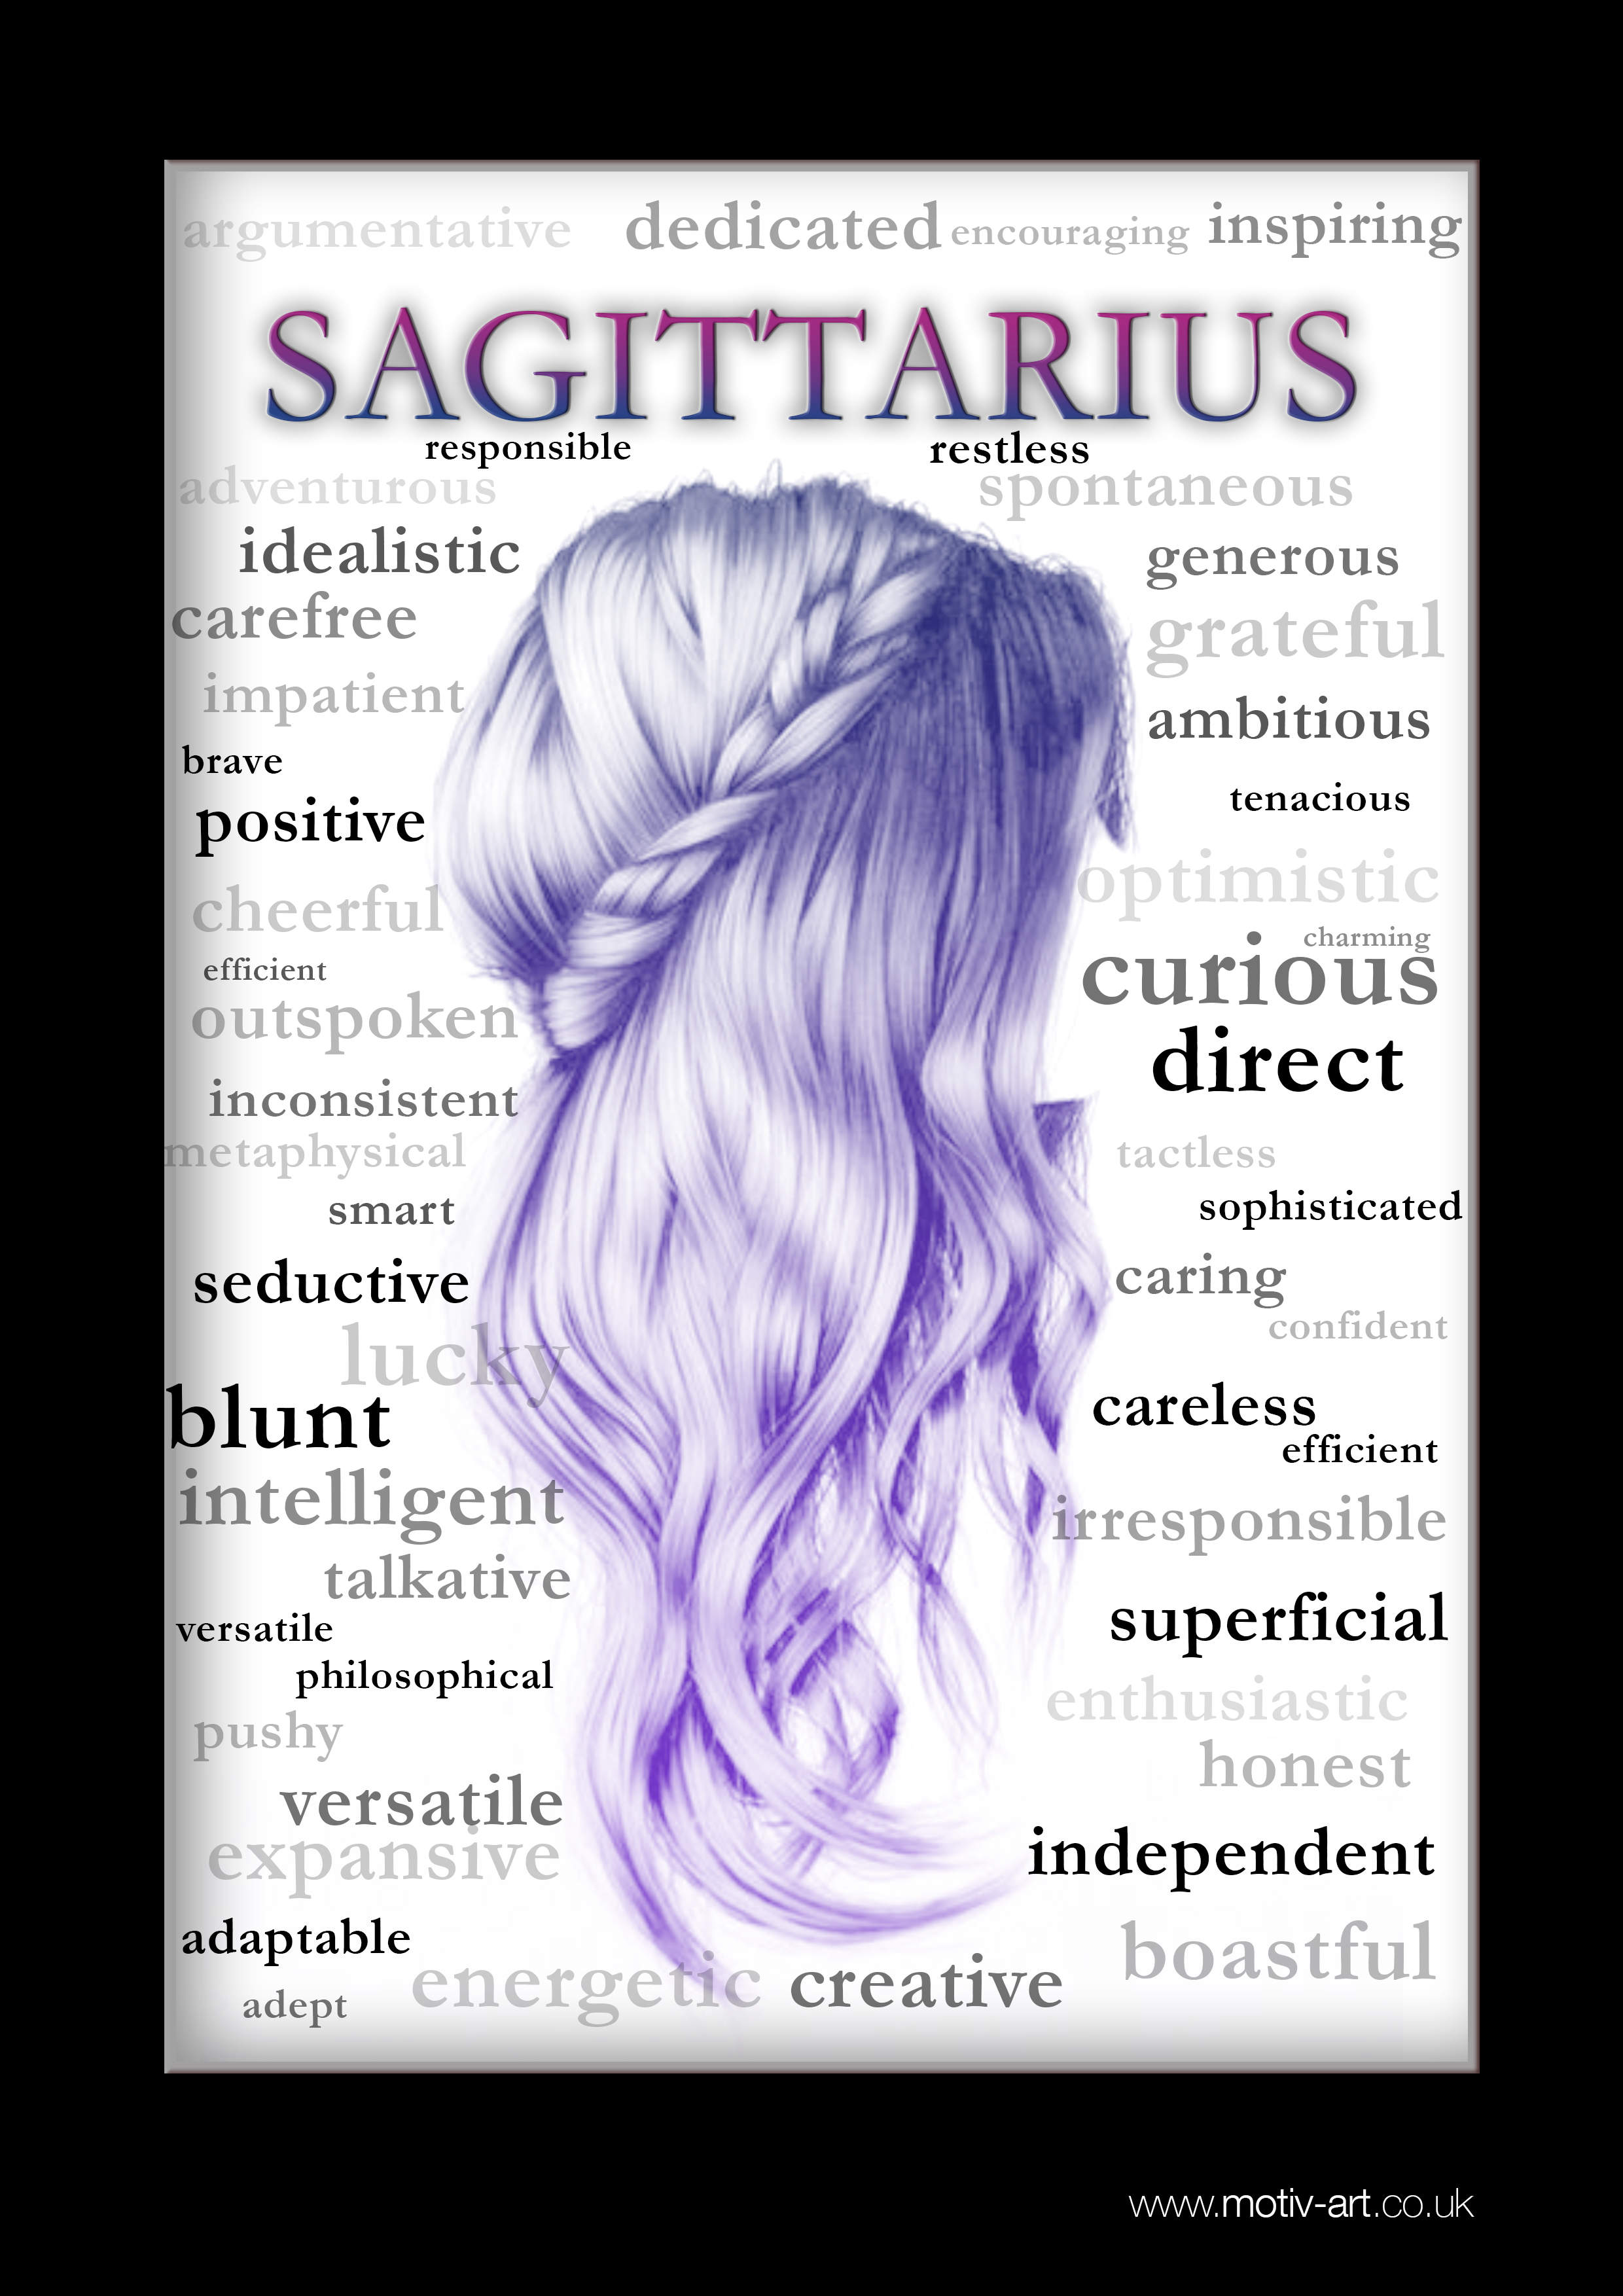 Sagittarius - 23 Nov - 22 Dec